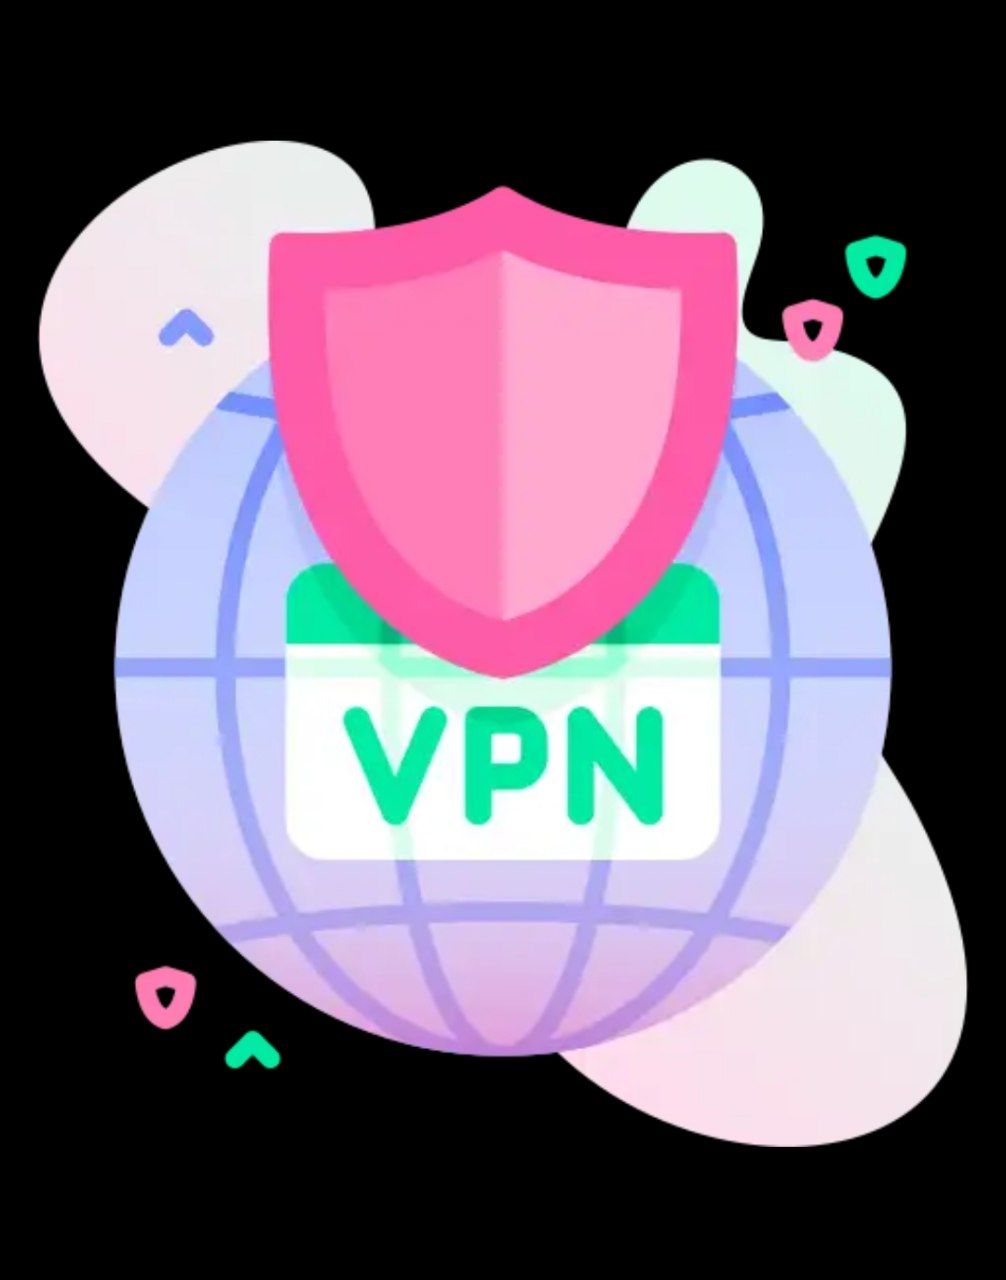 دریافت Round VPN برای اینترنت همراه اول